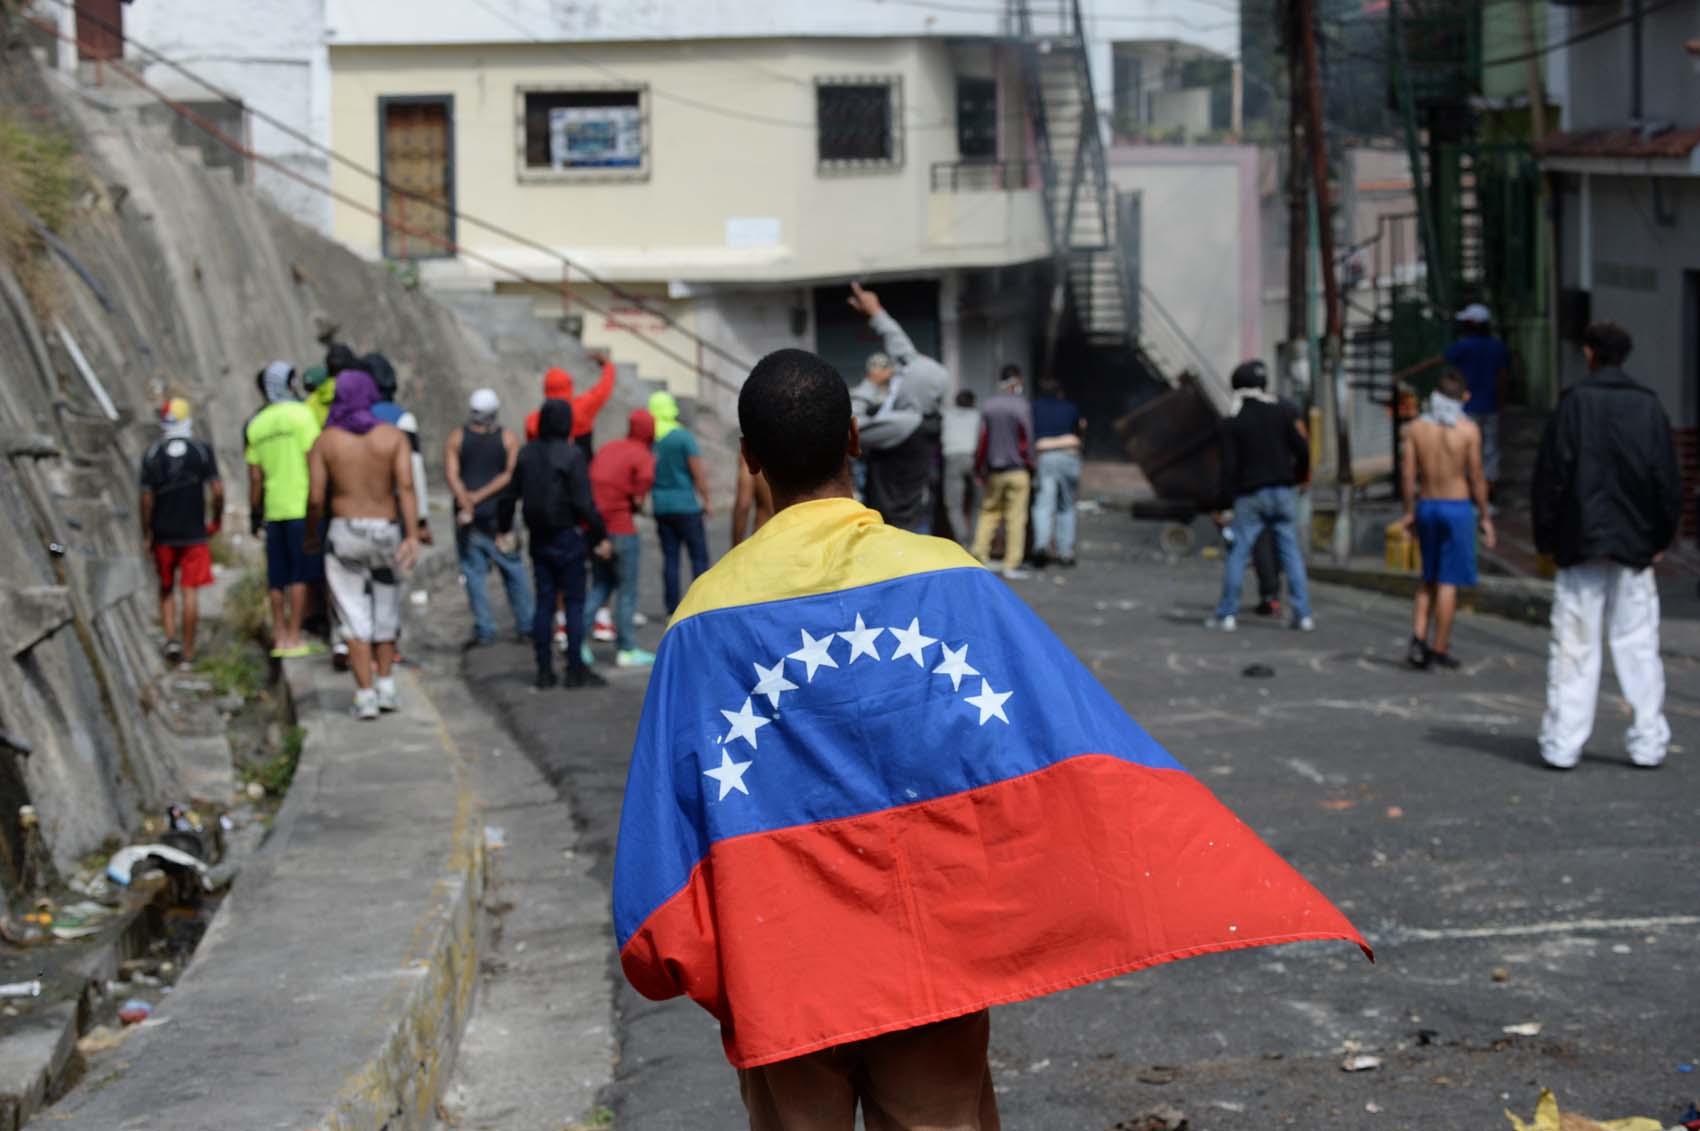 Cancilleres de países europeos profundamente preocupados por situación de Venezuela